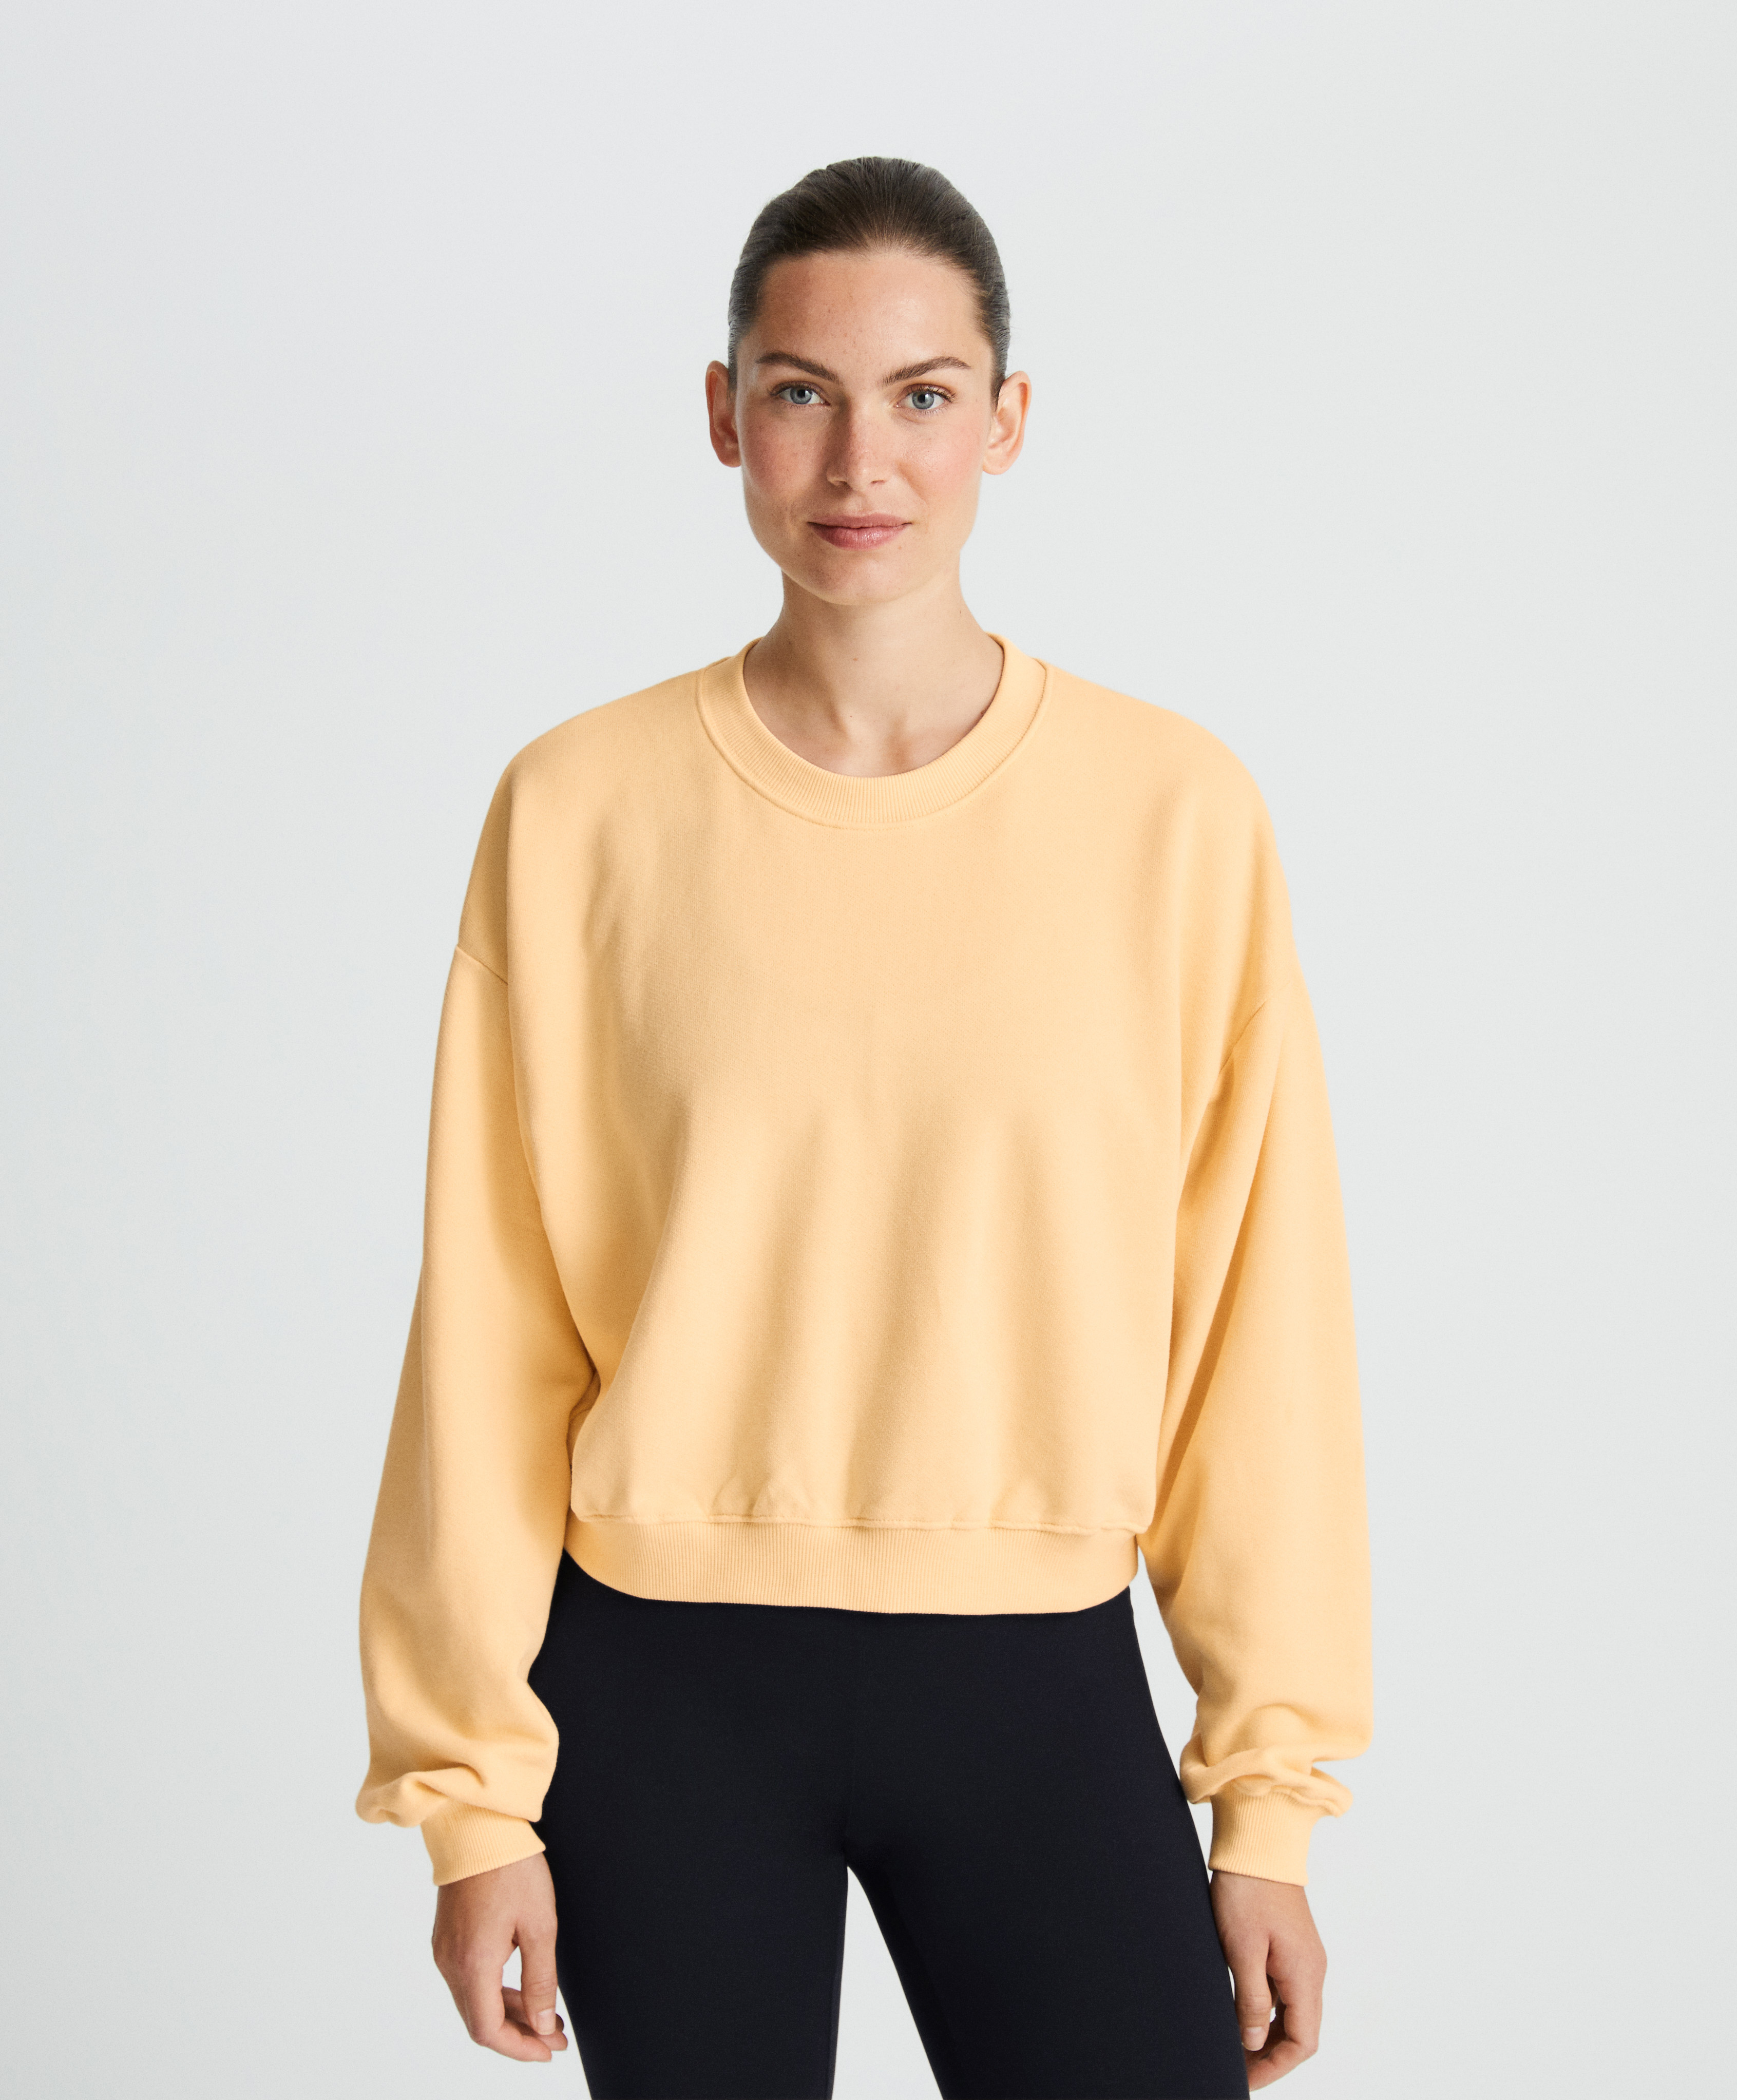 Plüschiges Sweatshirt aus 100 % Baumwolle